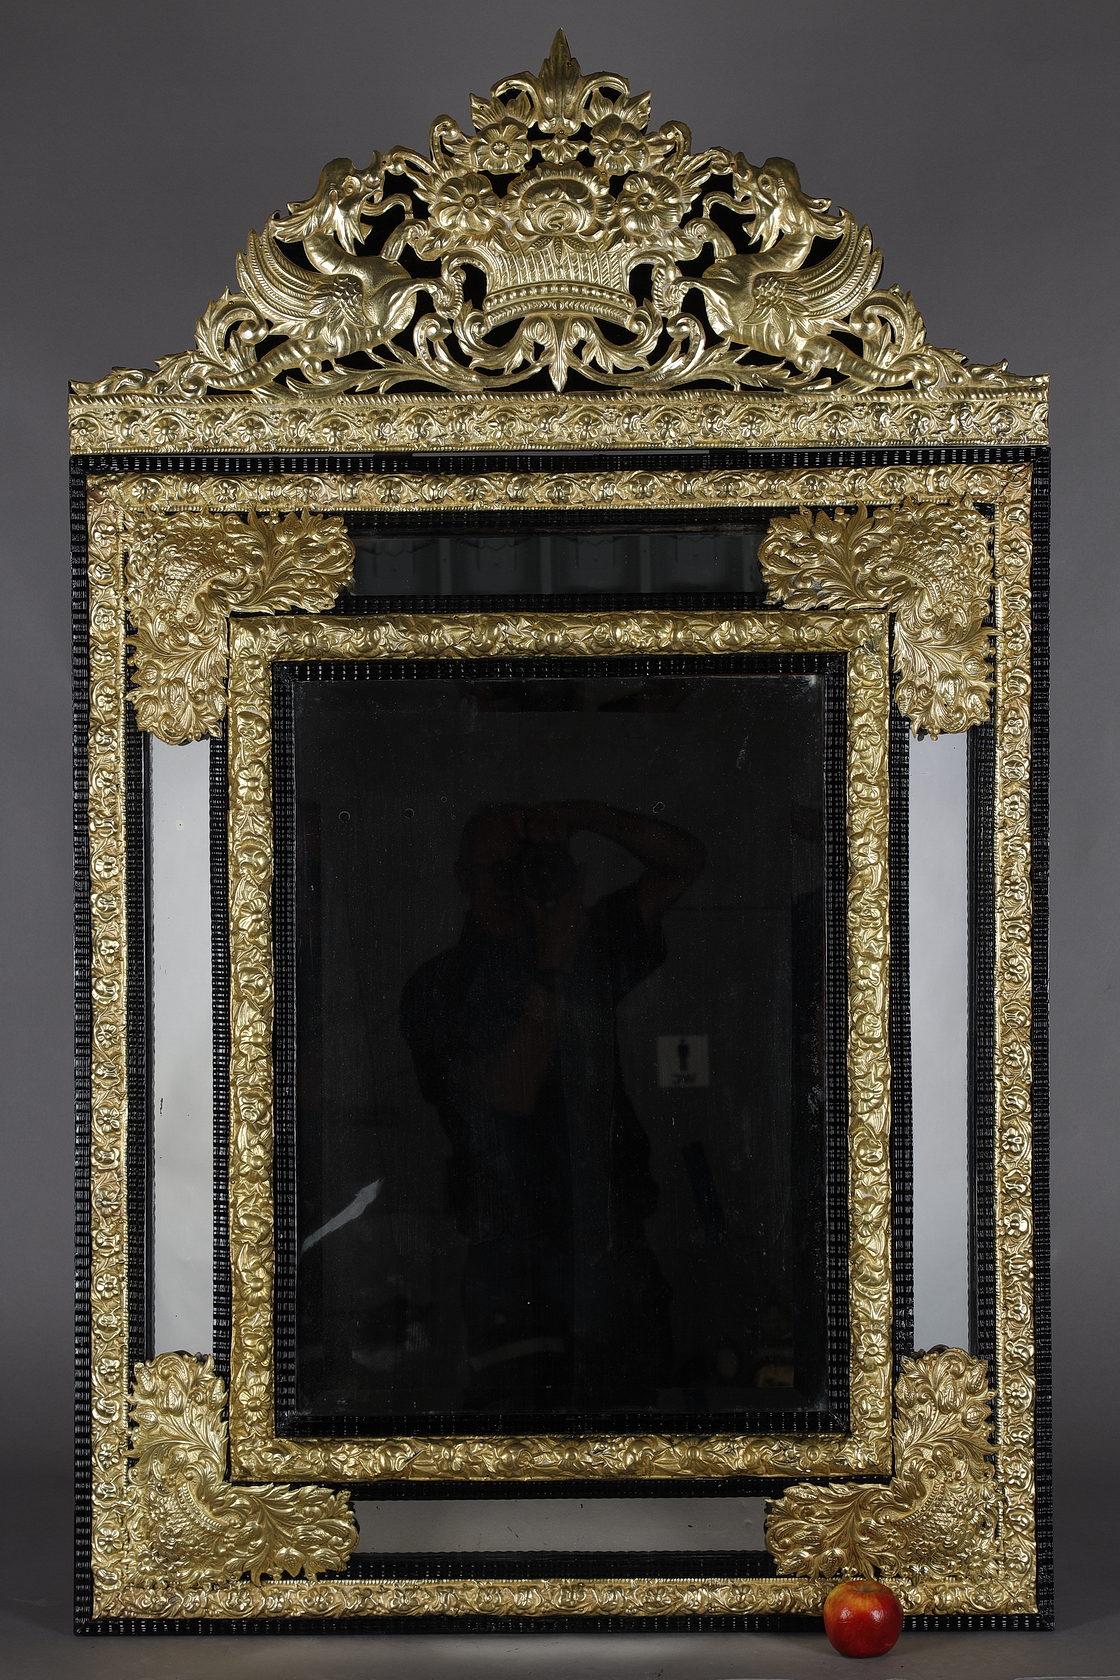 Großer Spiegel im Louis XIV-Stil mit Spiegelstangen aus geschwärztem Holz und reichem vergoldetem und geprägtem Kupferdekor. Der Giebel ist mit dem Motiv eines überquellenden Blumenkorbs geschmückt, der von zwei geflügelten Chimären mit offenen